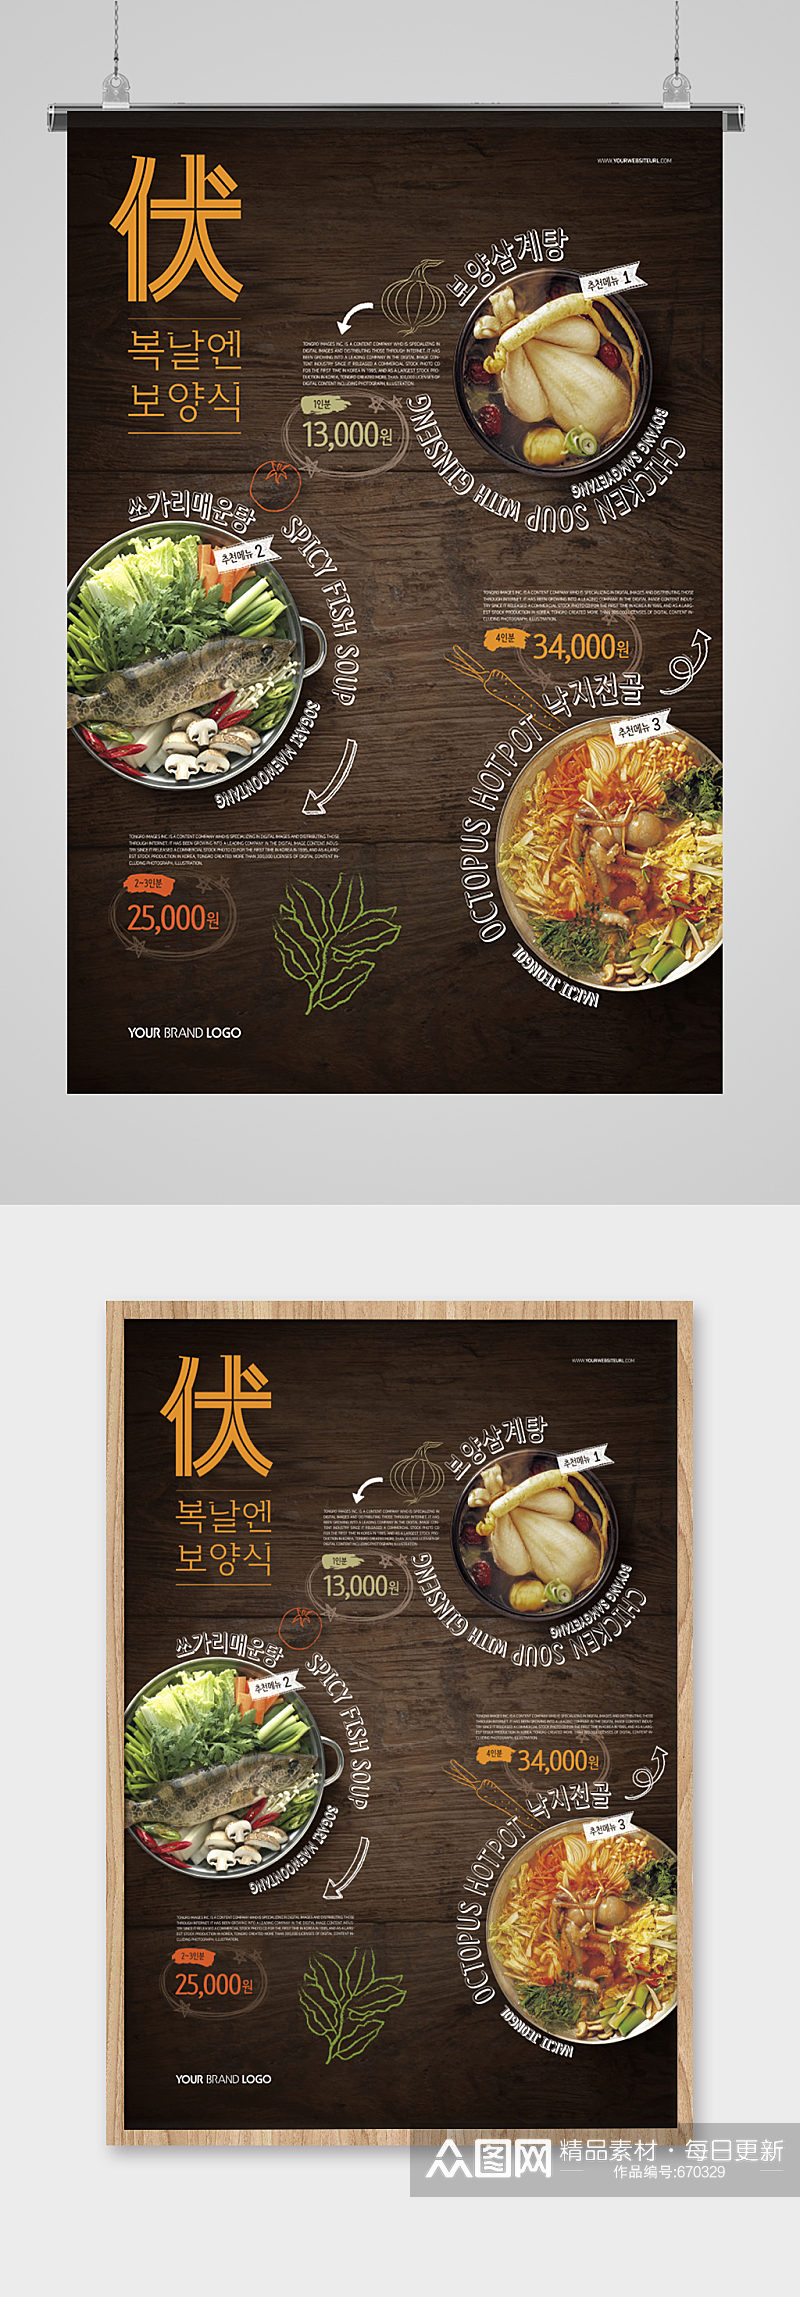 时尚创意韩国美食海报素材